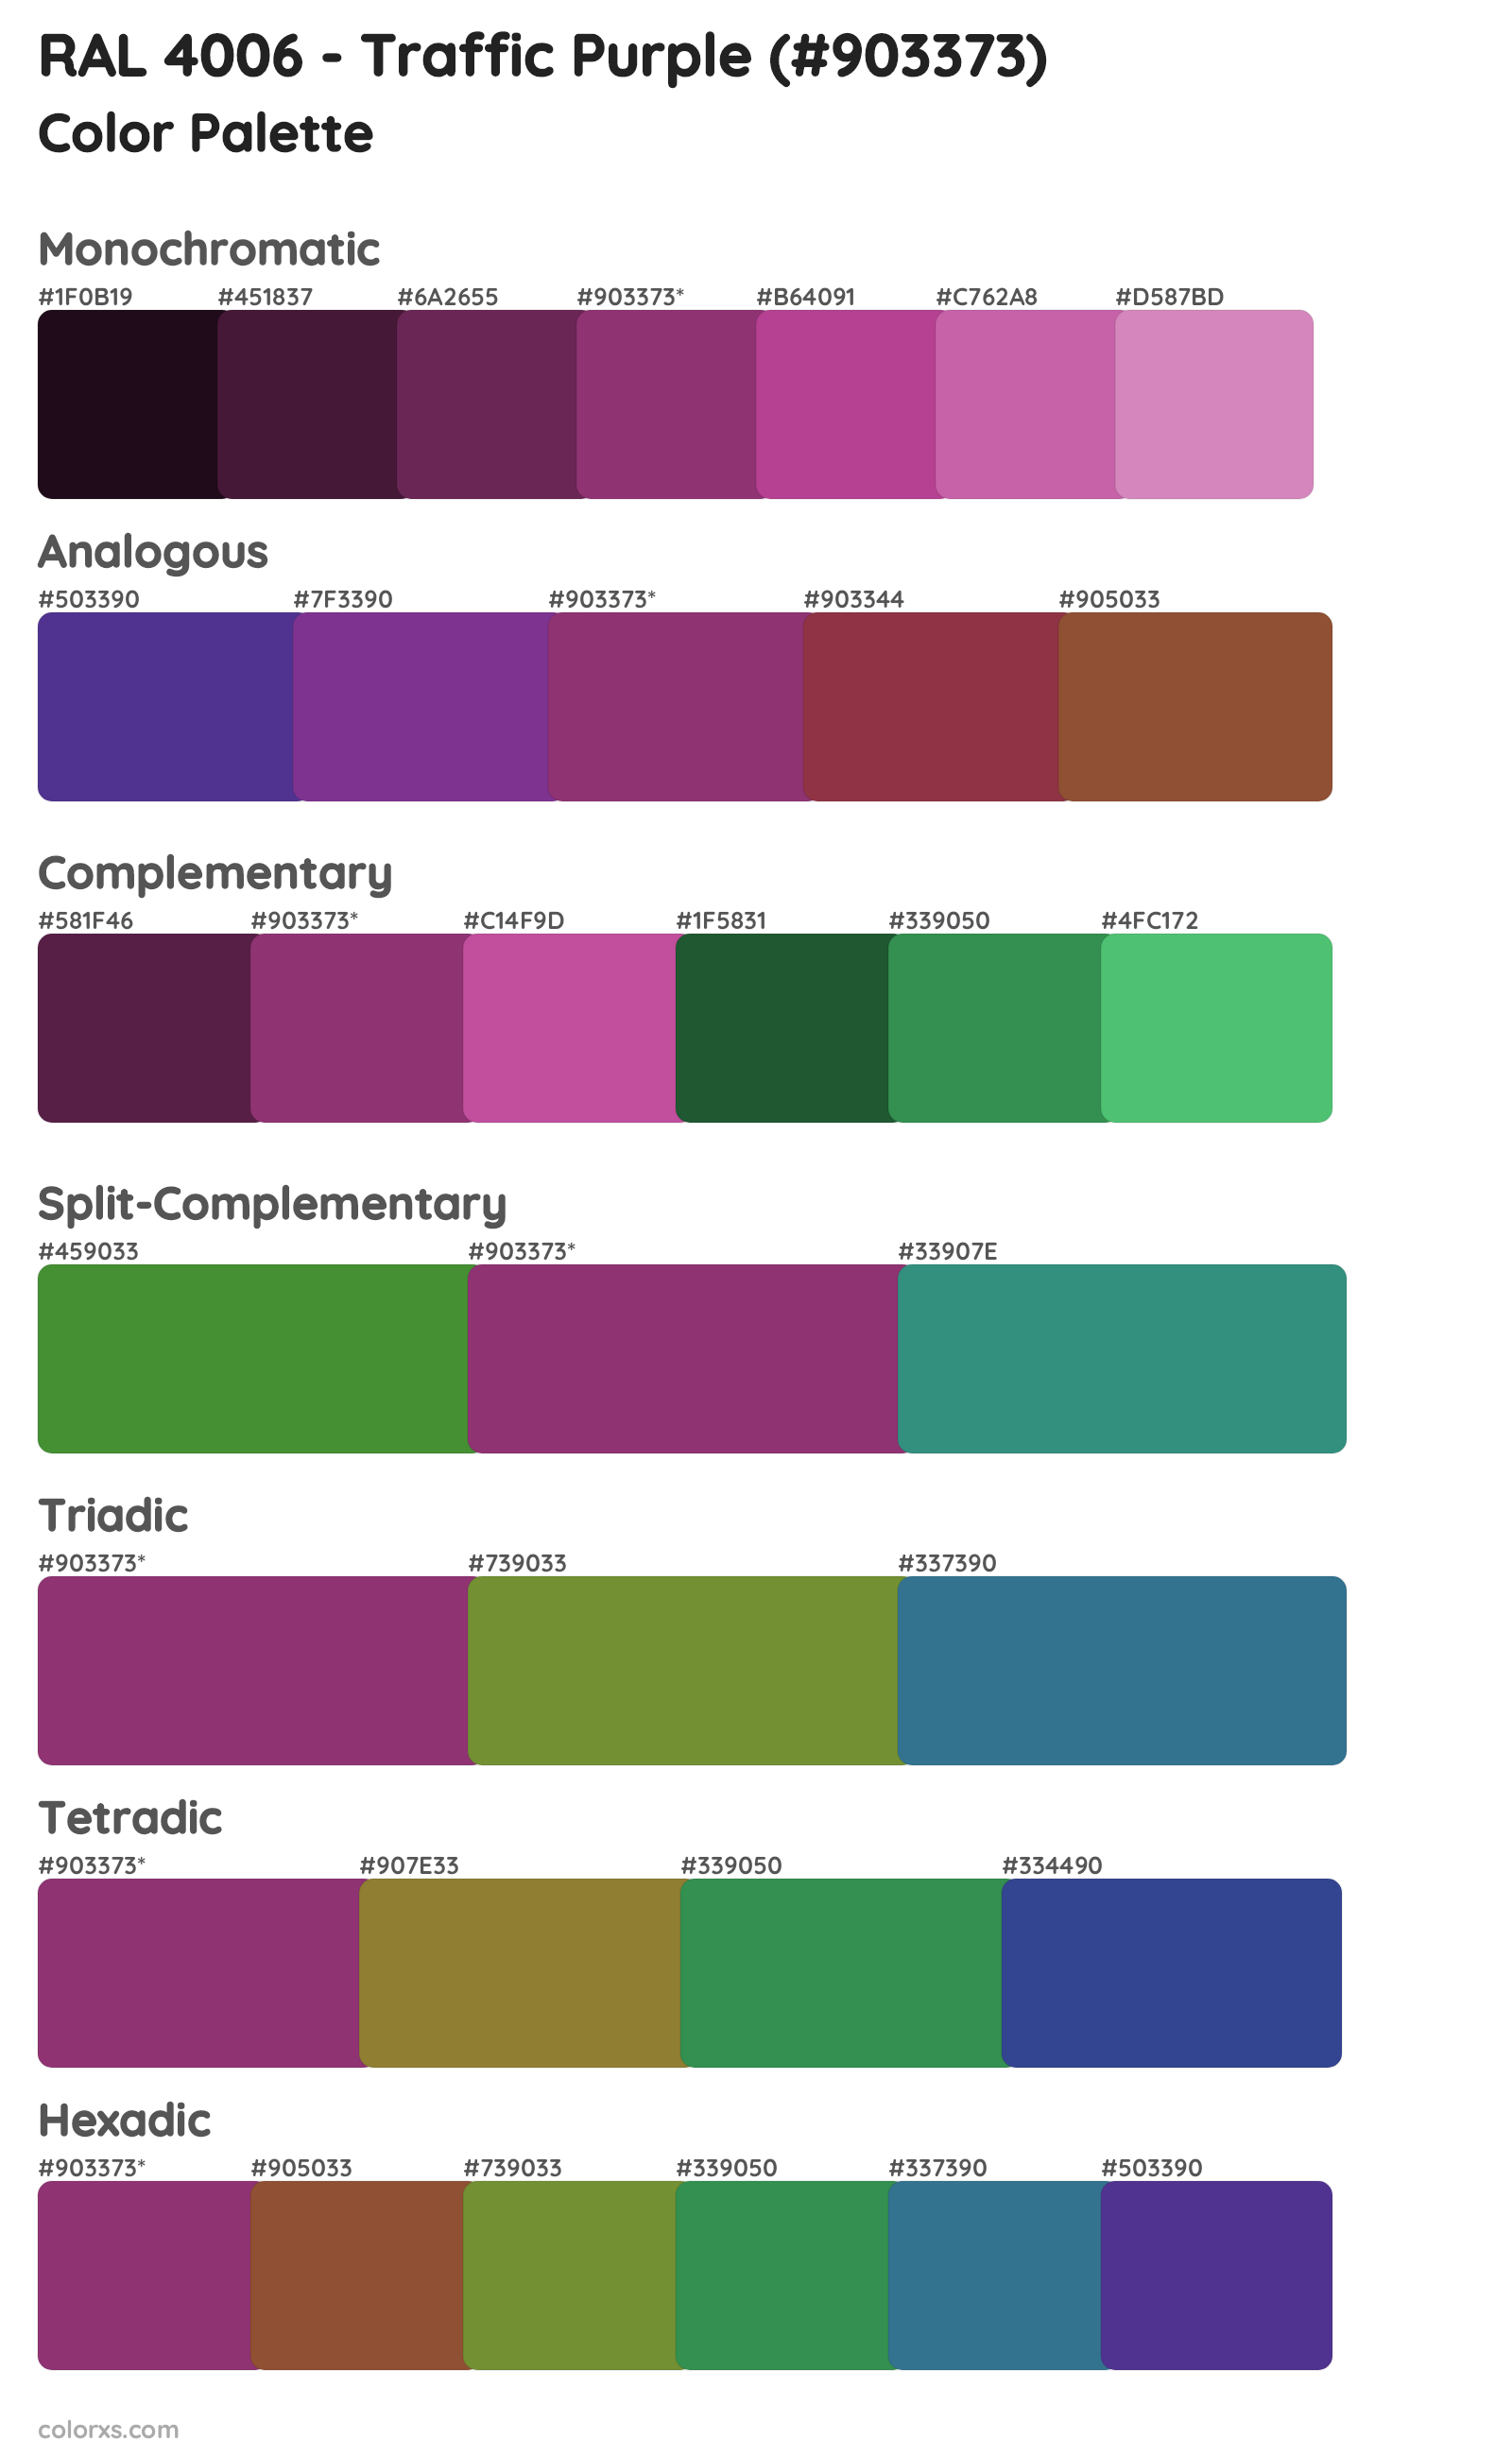 RAL 4006 - Traffic Purple Color Scheme Palettes